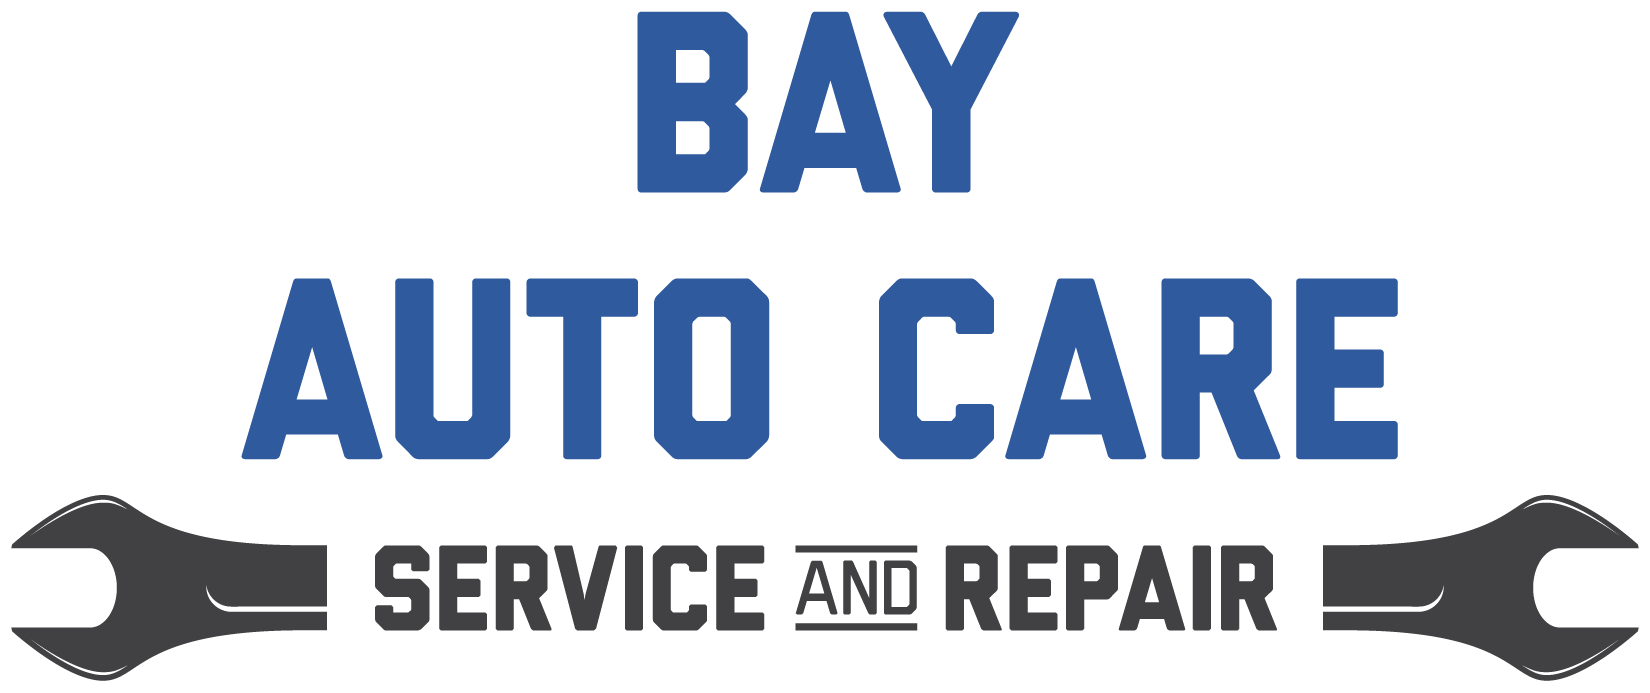 Auto Care Logo - Bay Auto Care